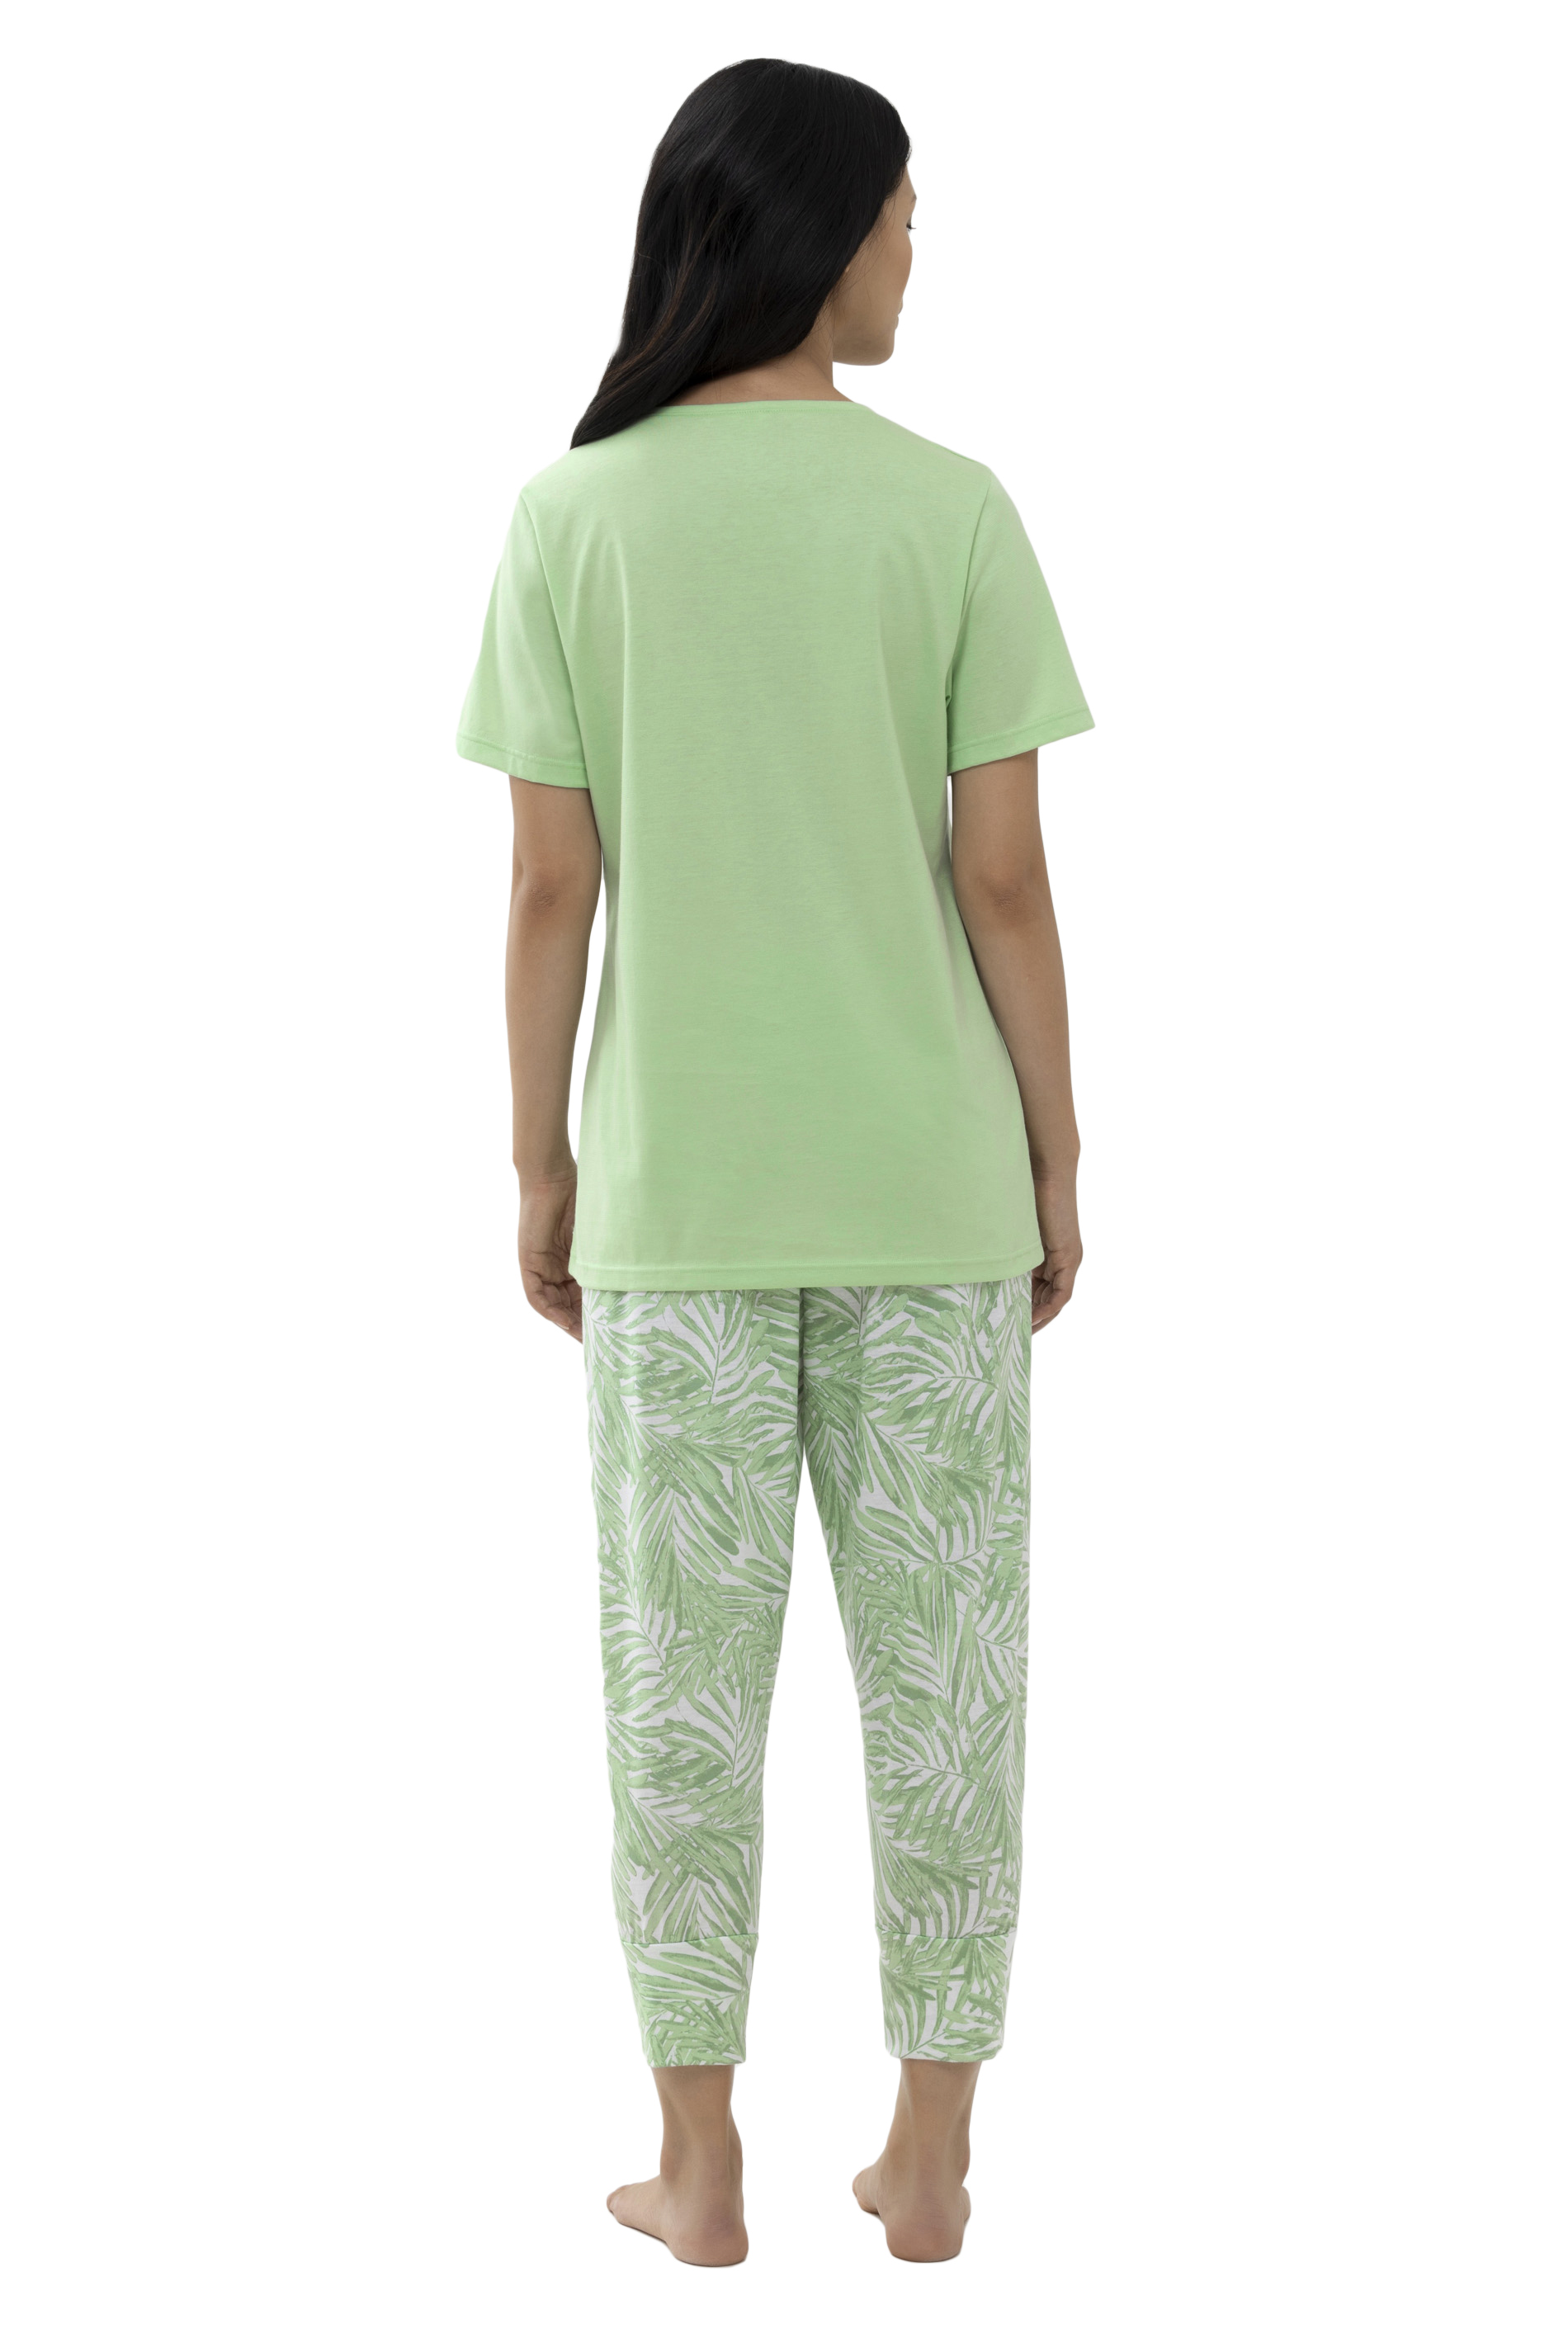 Damen-Schlafanzug mit  gemusterter 3/4 langer Hose und uni 1/2 Arm-Shirt aus Baumwoll-Jersey